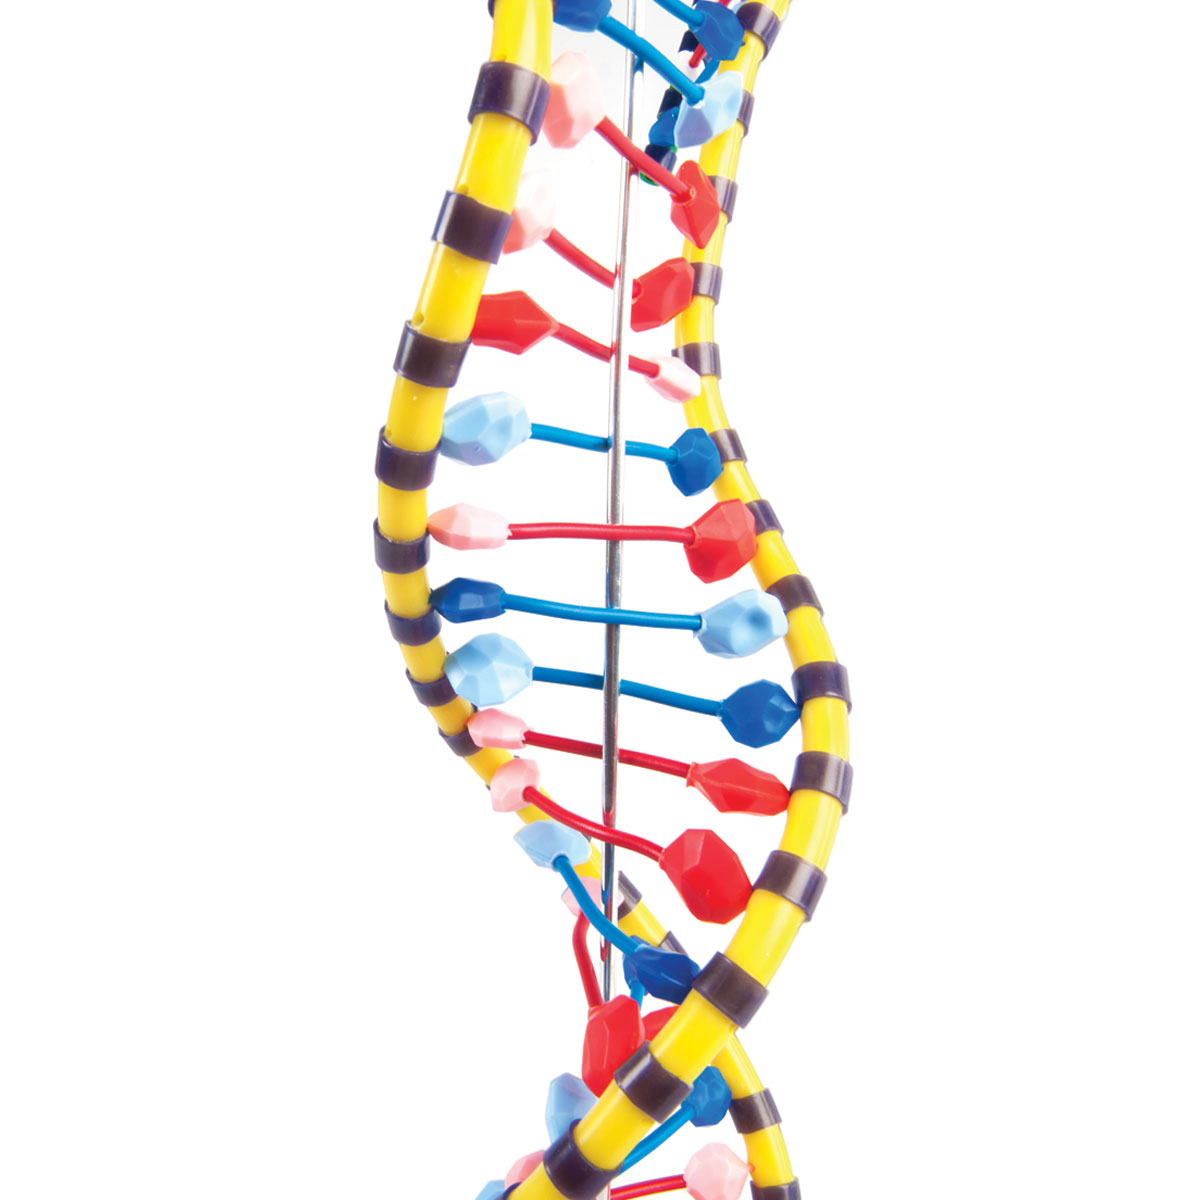 Modelo de ADN de doble hêlice - 1005128 - W19205 - Constitución y Función  del ADN - 3B Scientific